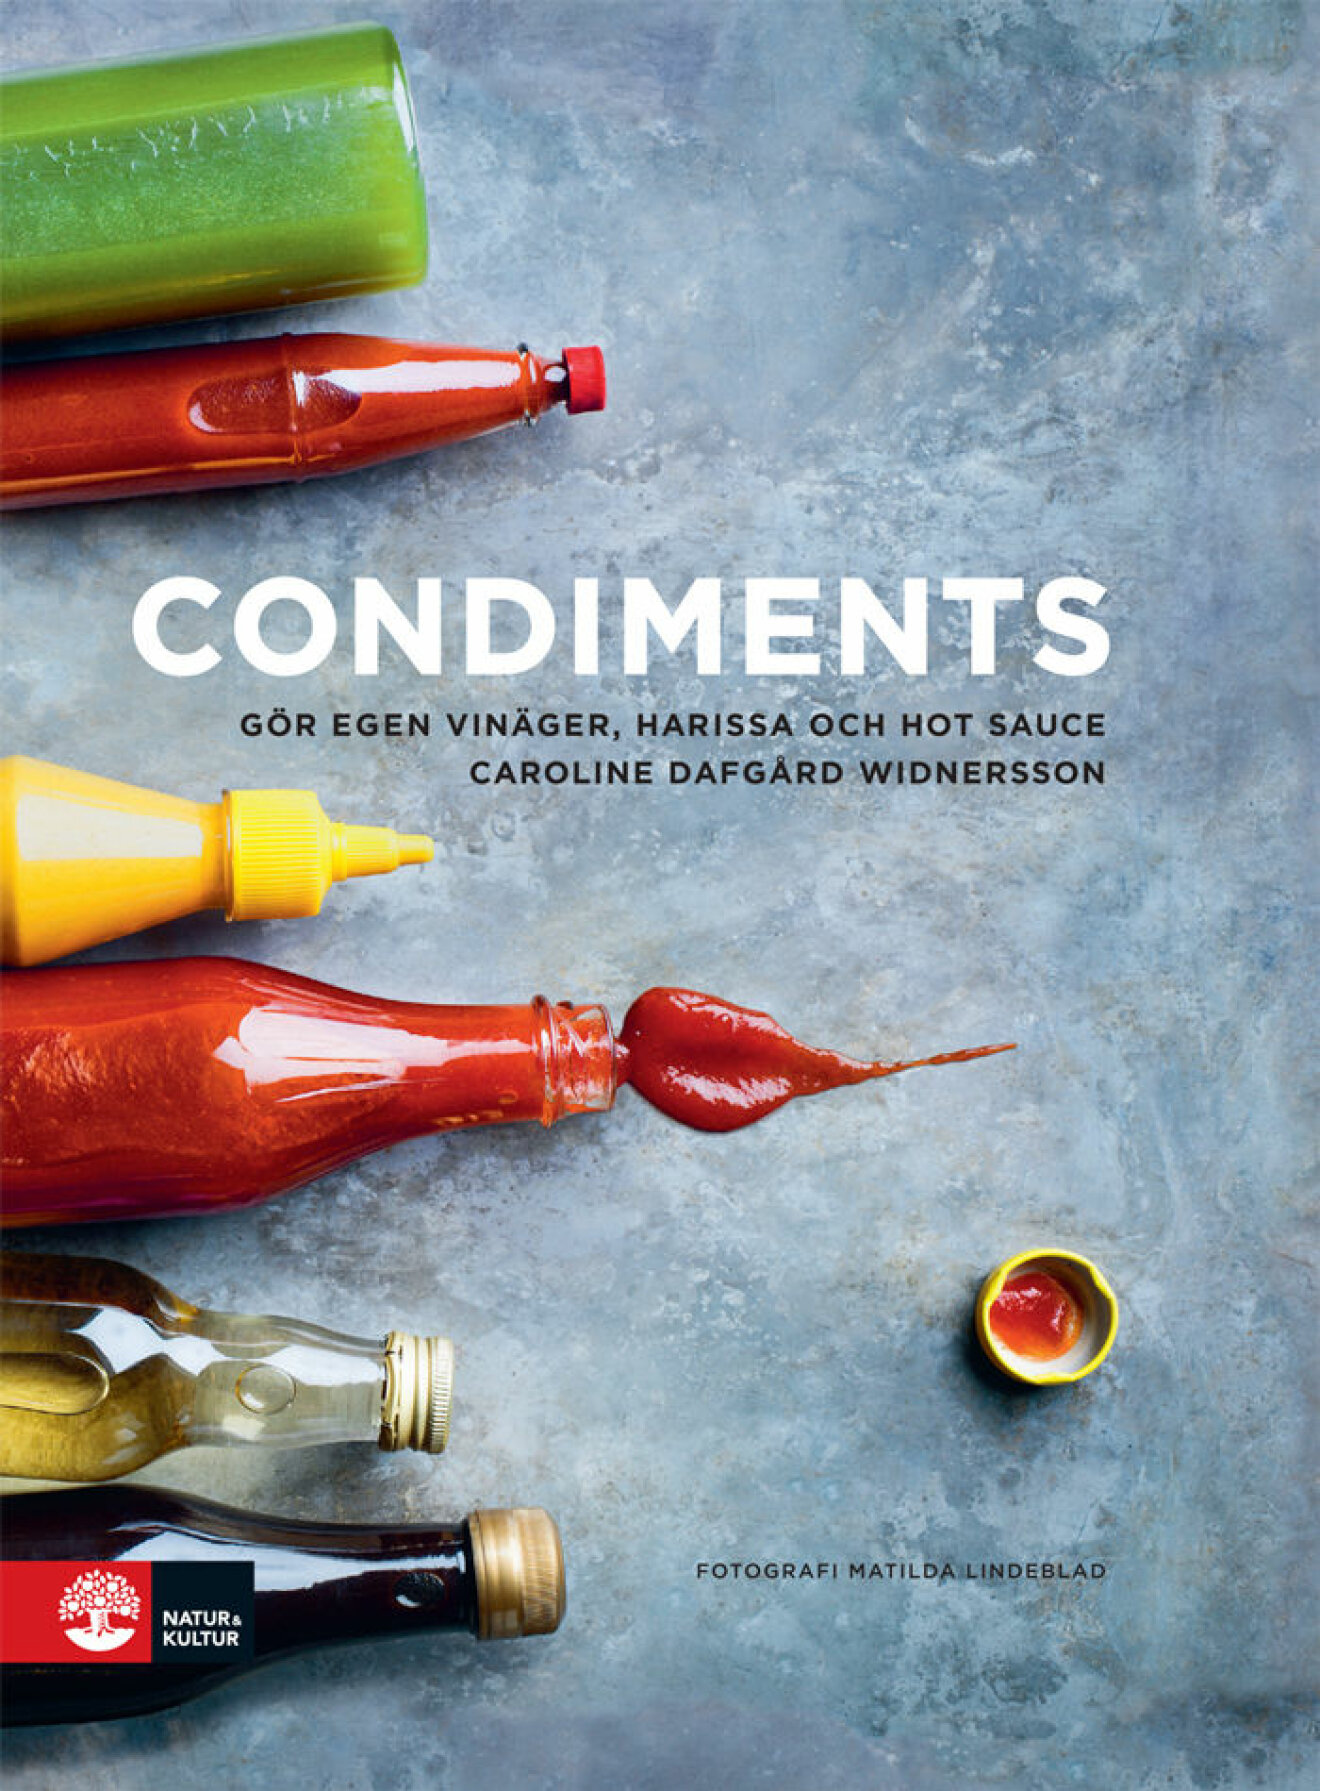 Condiments: Gör egen vinäger, harissa och hot sauce.